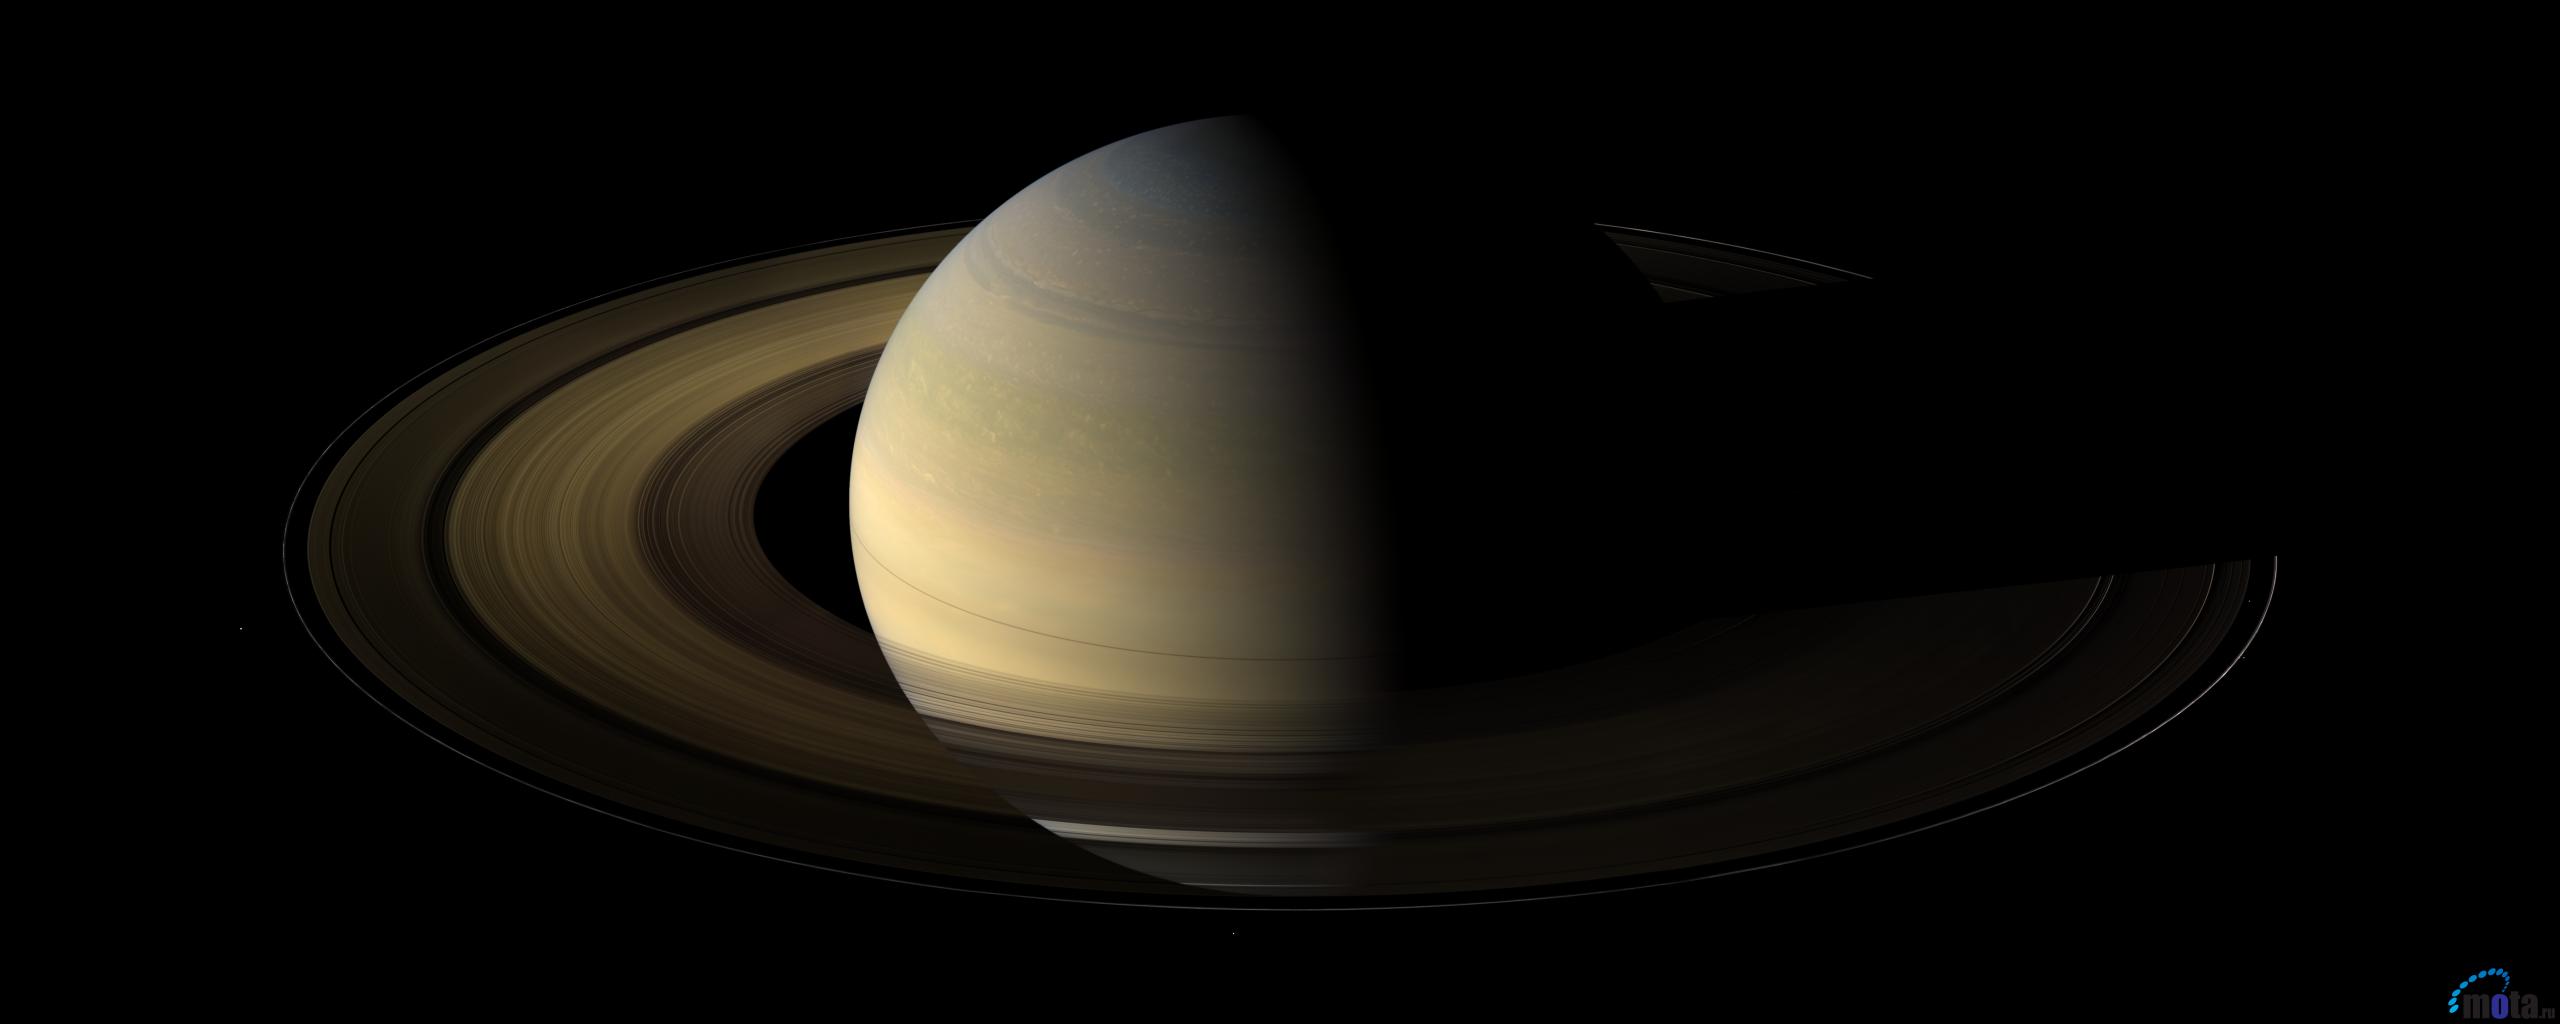 Desktop Wallpaper Saturn In July By Cassini Wac